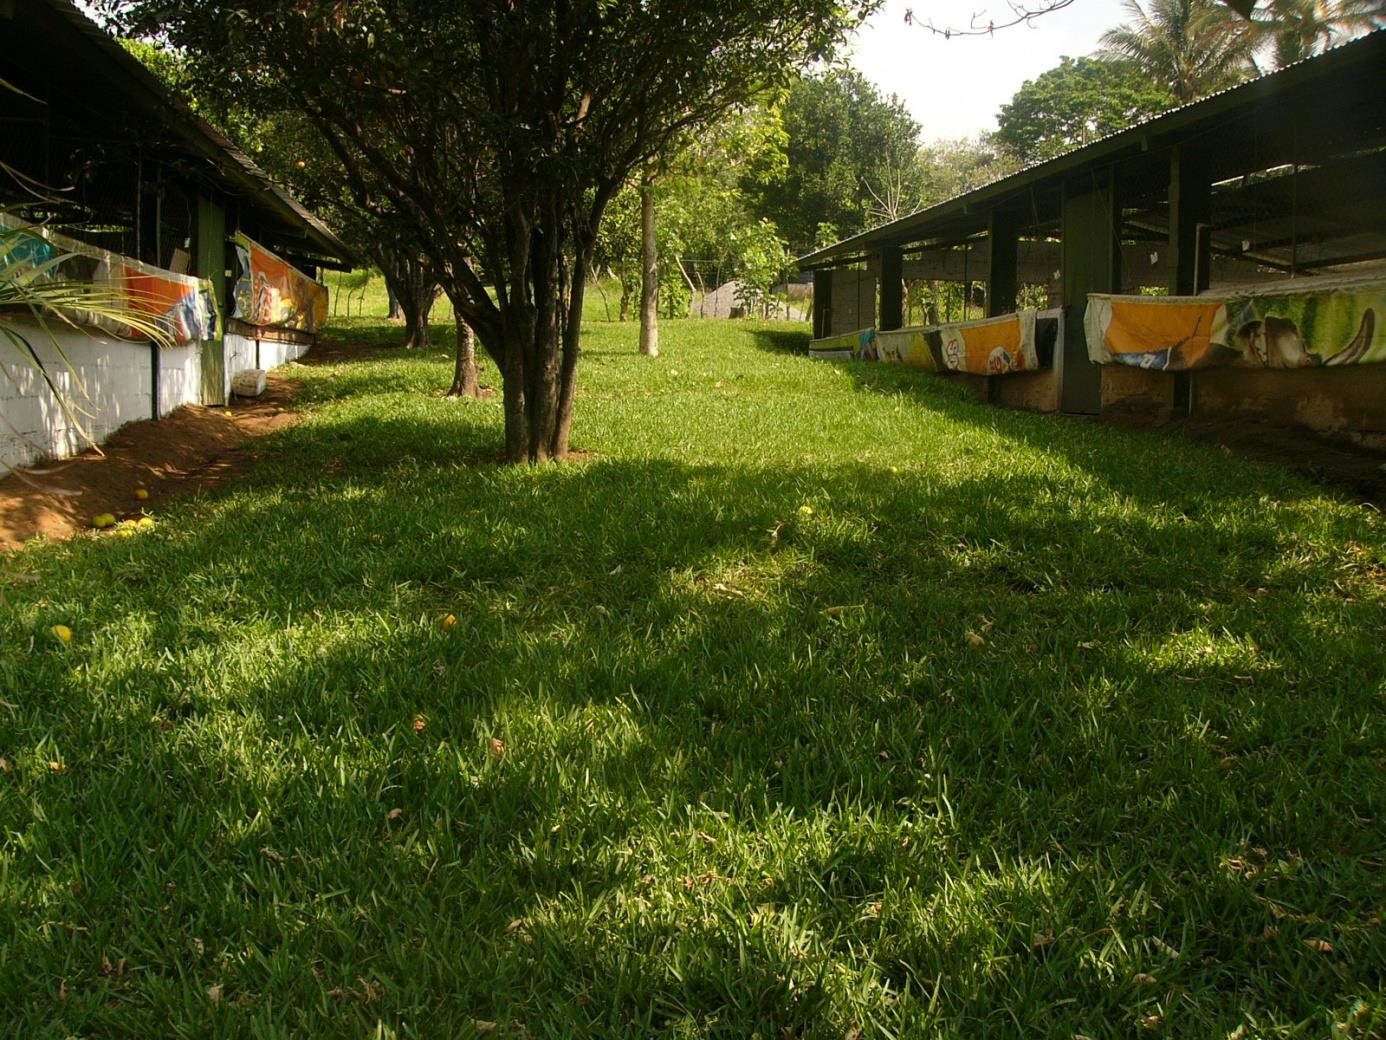 Las areas verdes alrededor de las salas de destete son importantes para mejorar el ambiente de las instalaciones de los cerdos,